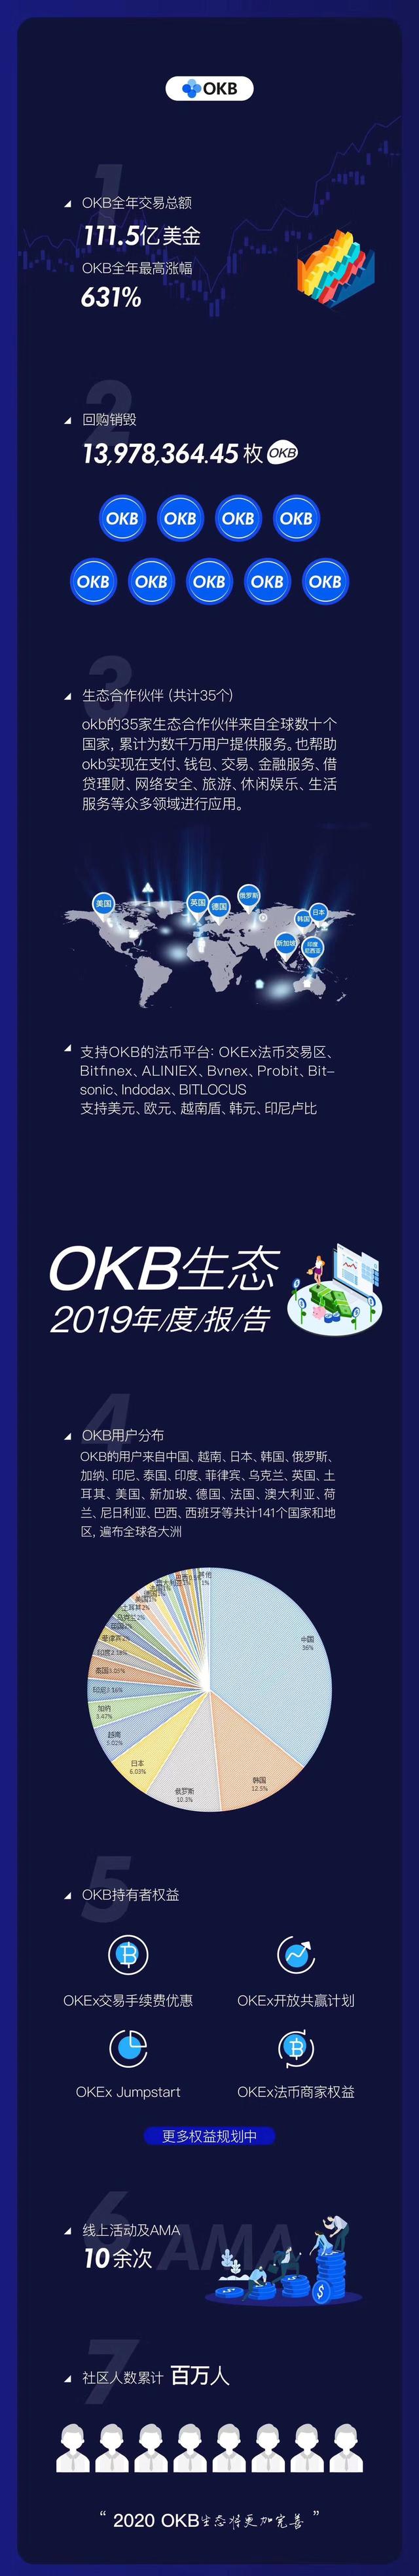 OKB发布2019年度报告：全年交易额111.5亿美元，共回购近1400万枚OKB